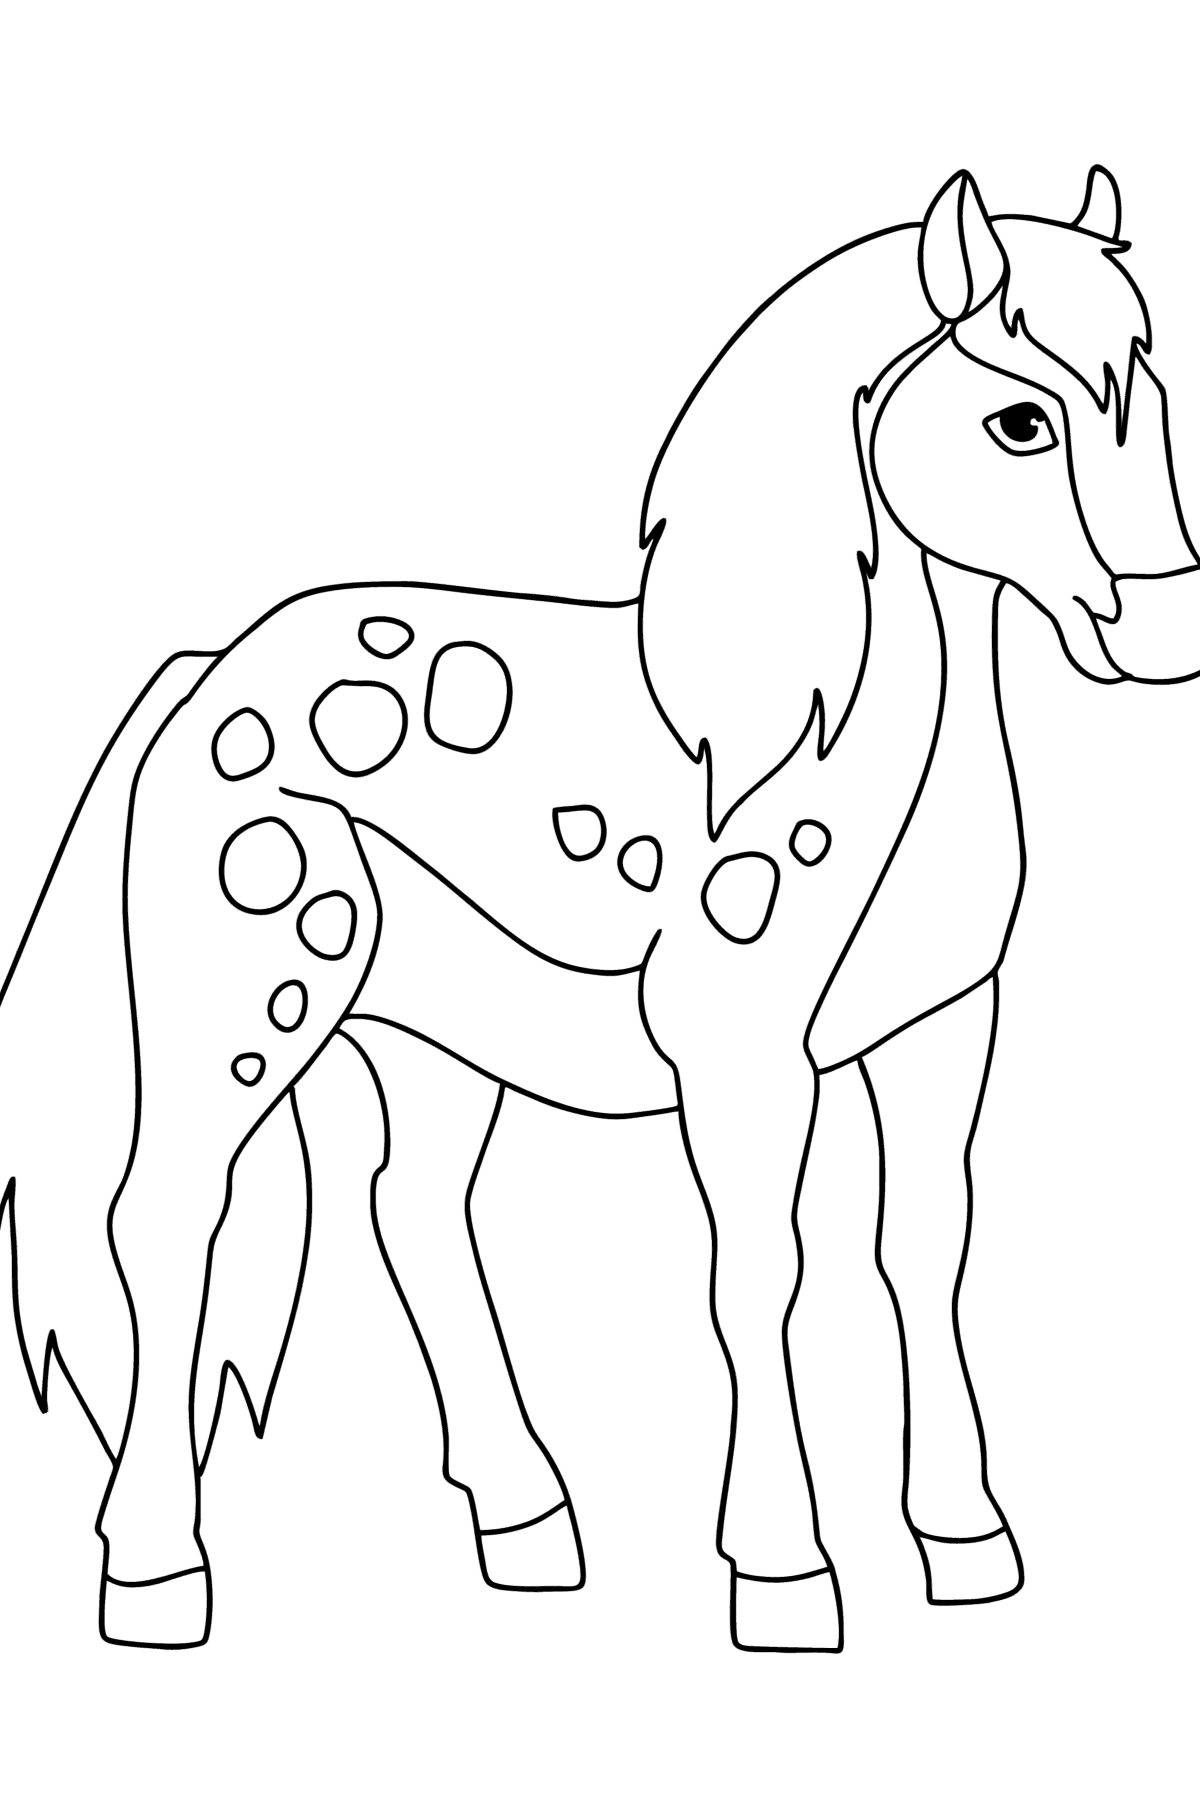 Kleurplaat Echte pony - kleurplaten voor kinderen